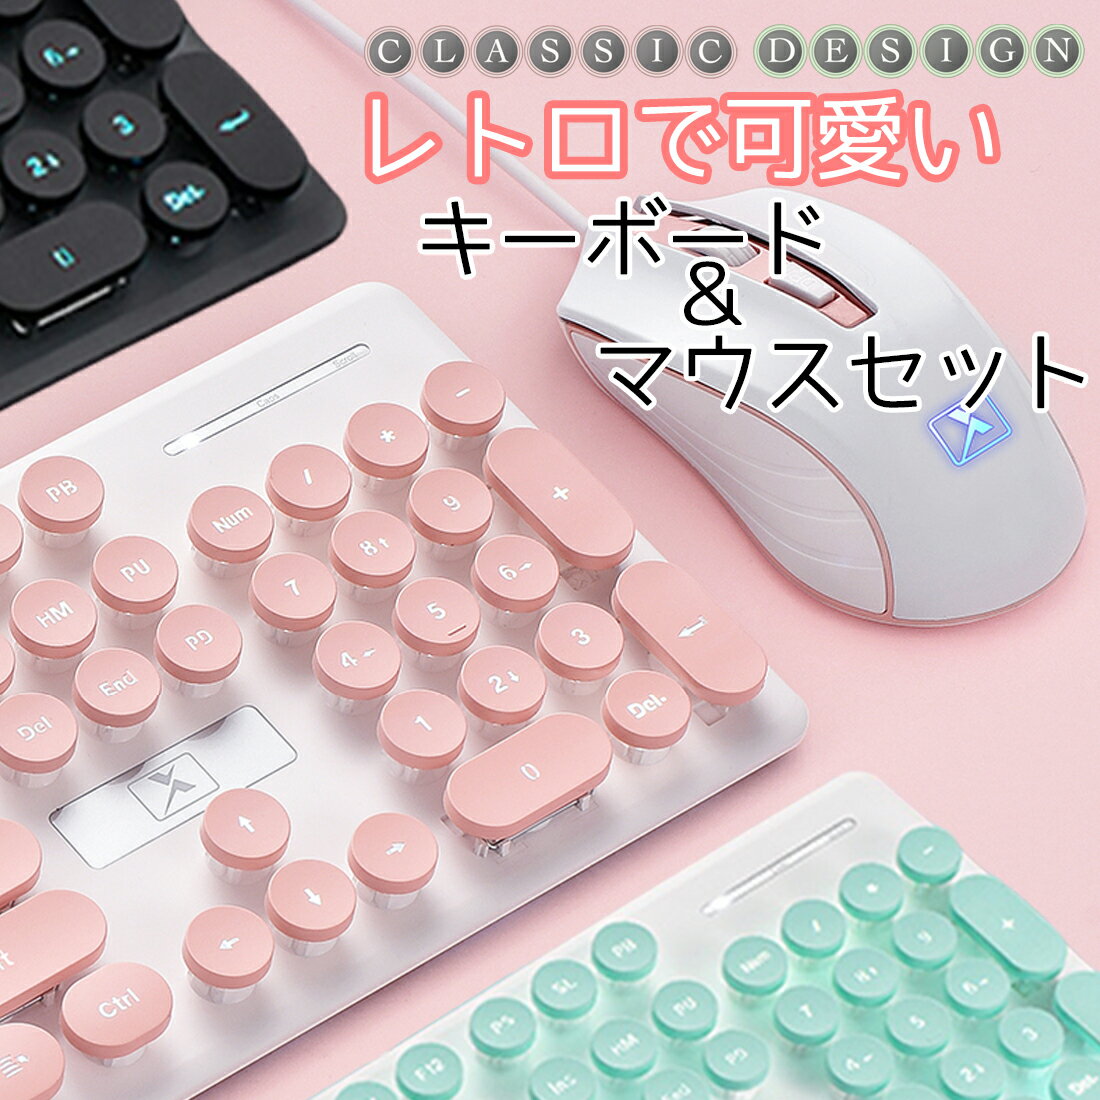 キーボード ワイヤレスや日本語配列など かわいいタイプライターキーボードのおすすめランキング わたしと 暮らし